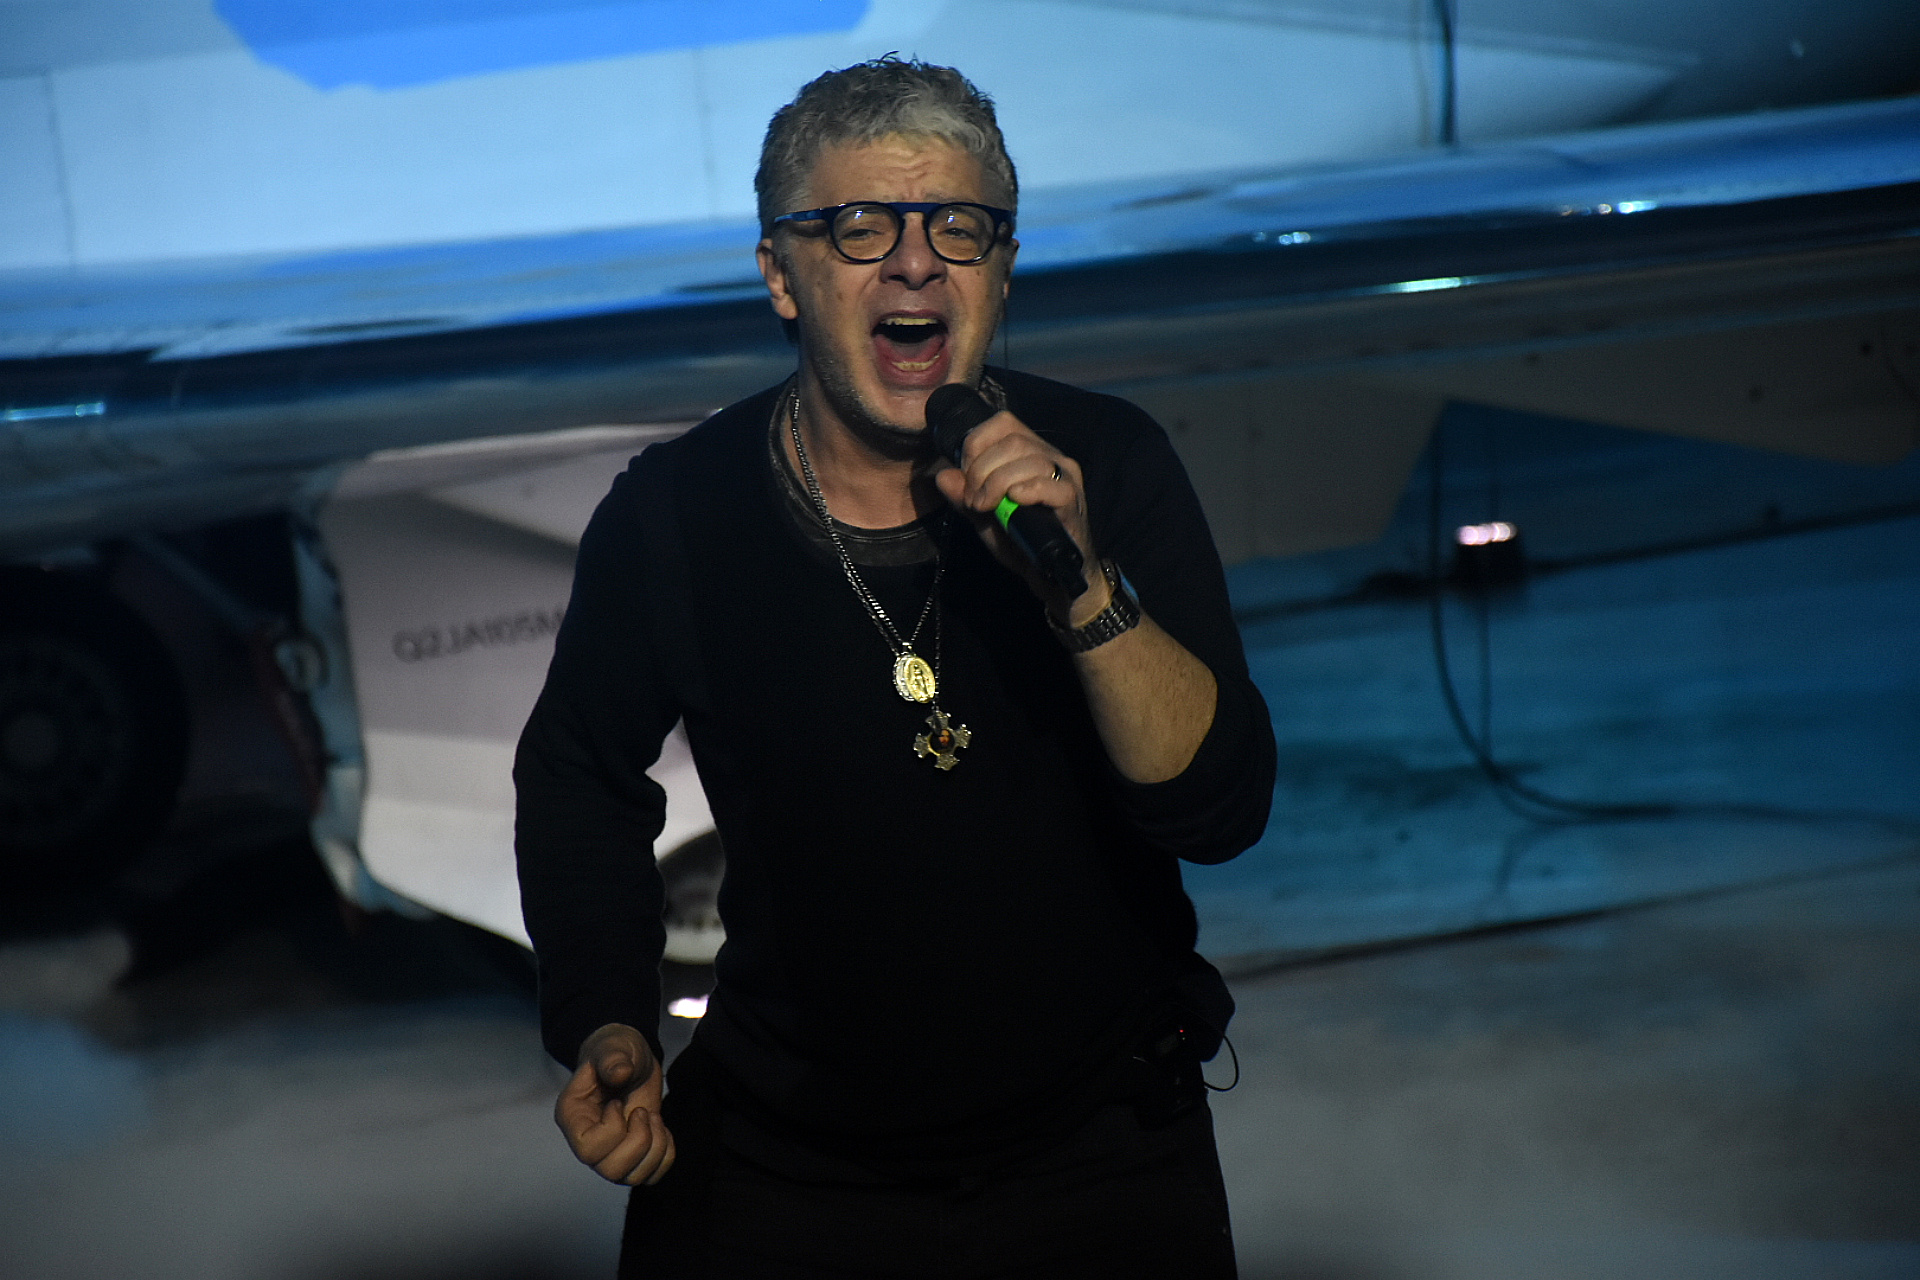 El cantante interpretó "Para Siempre", la canción dedicada a Maradona